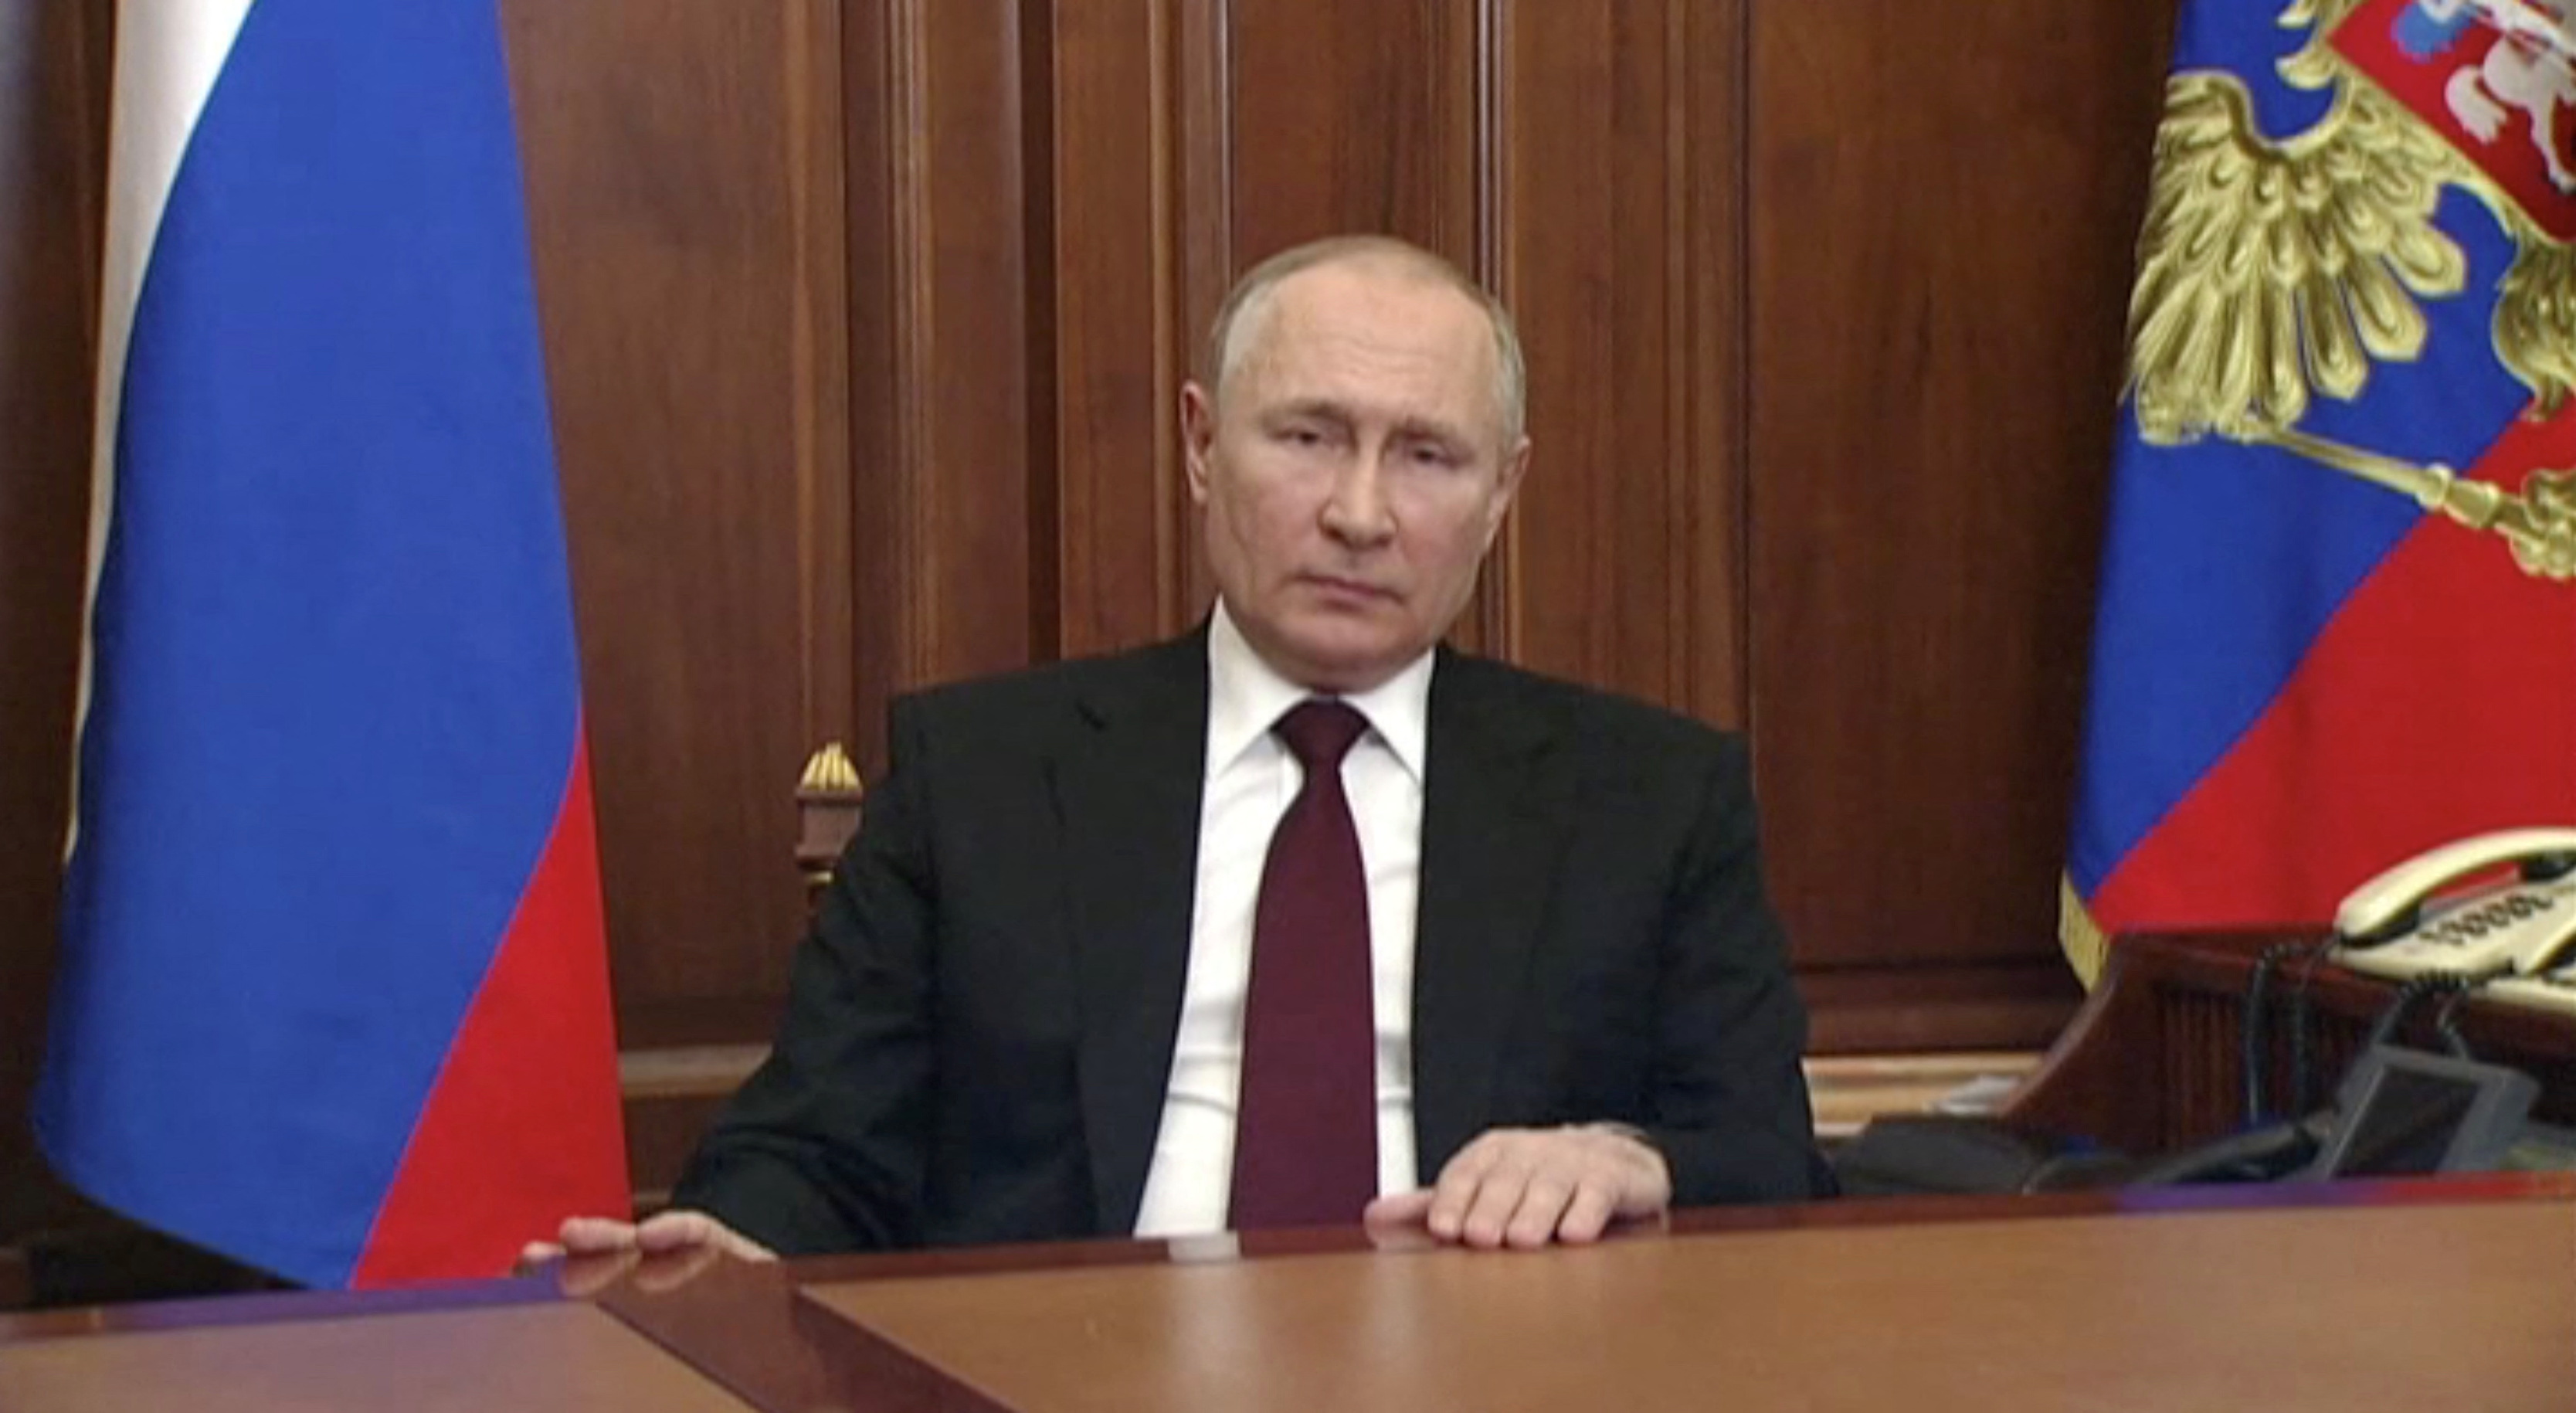 Extracts from Putin&#39;s speech on Ukraine | Reuters